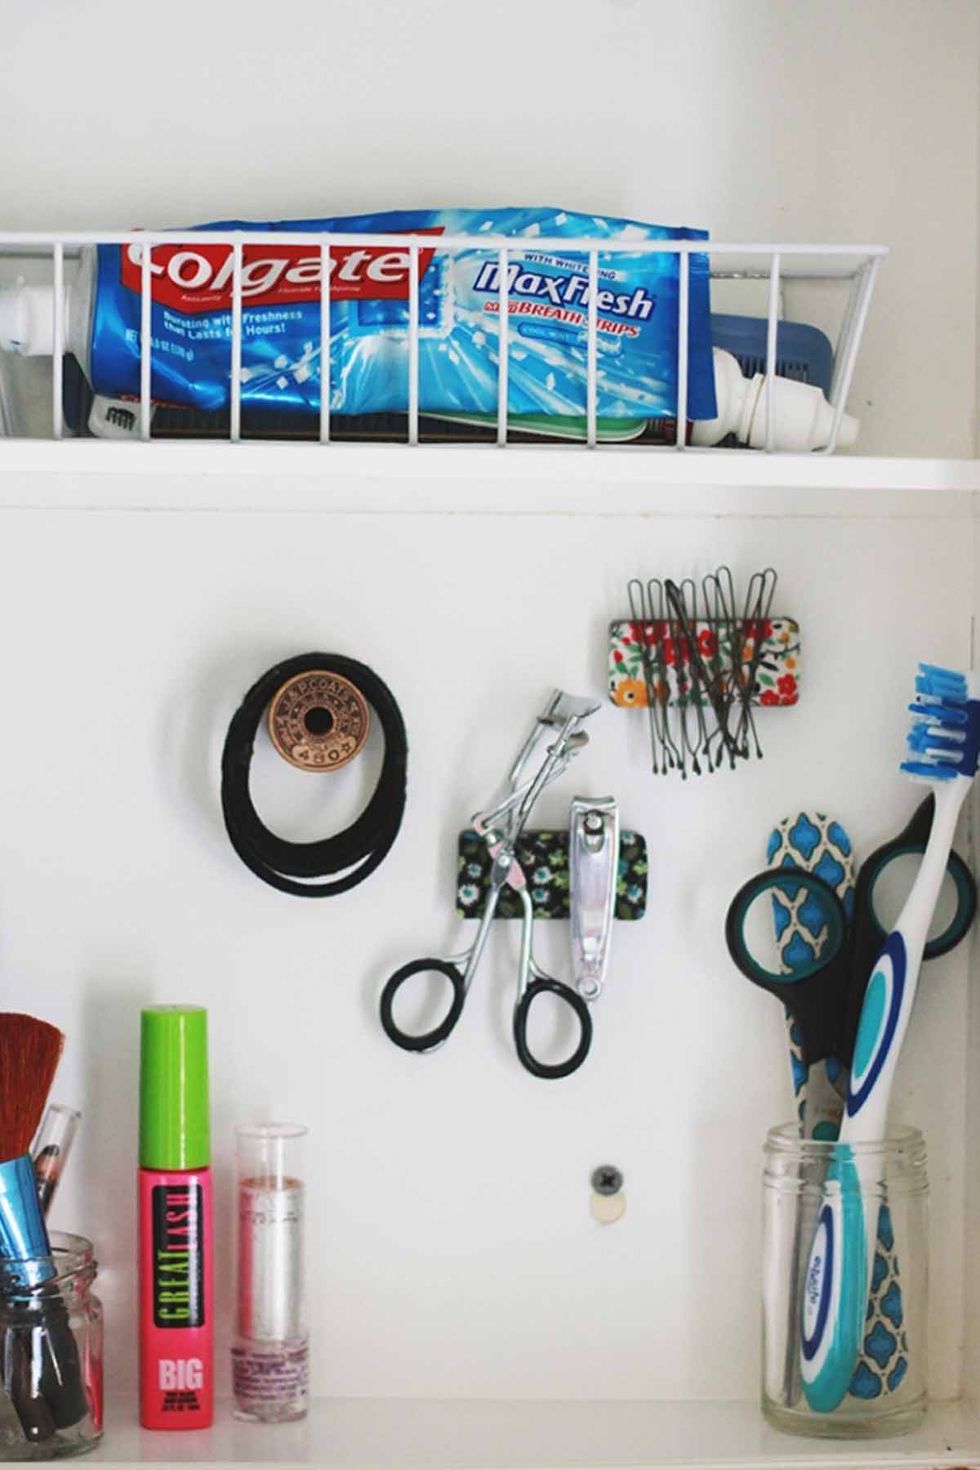 25 Best Bathroom Organization Ideas - DIY Bathroom Storage Organizers